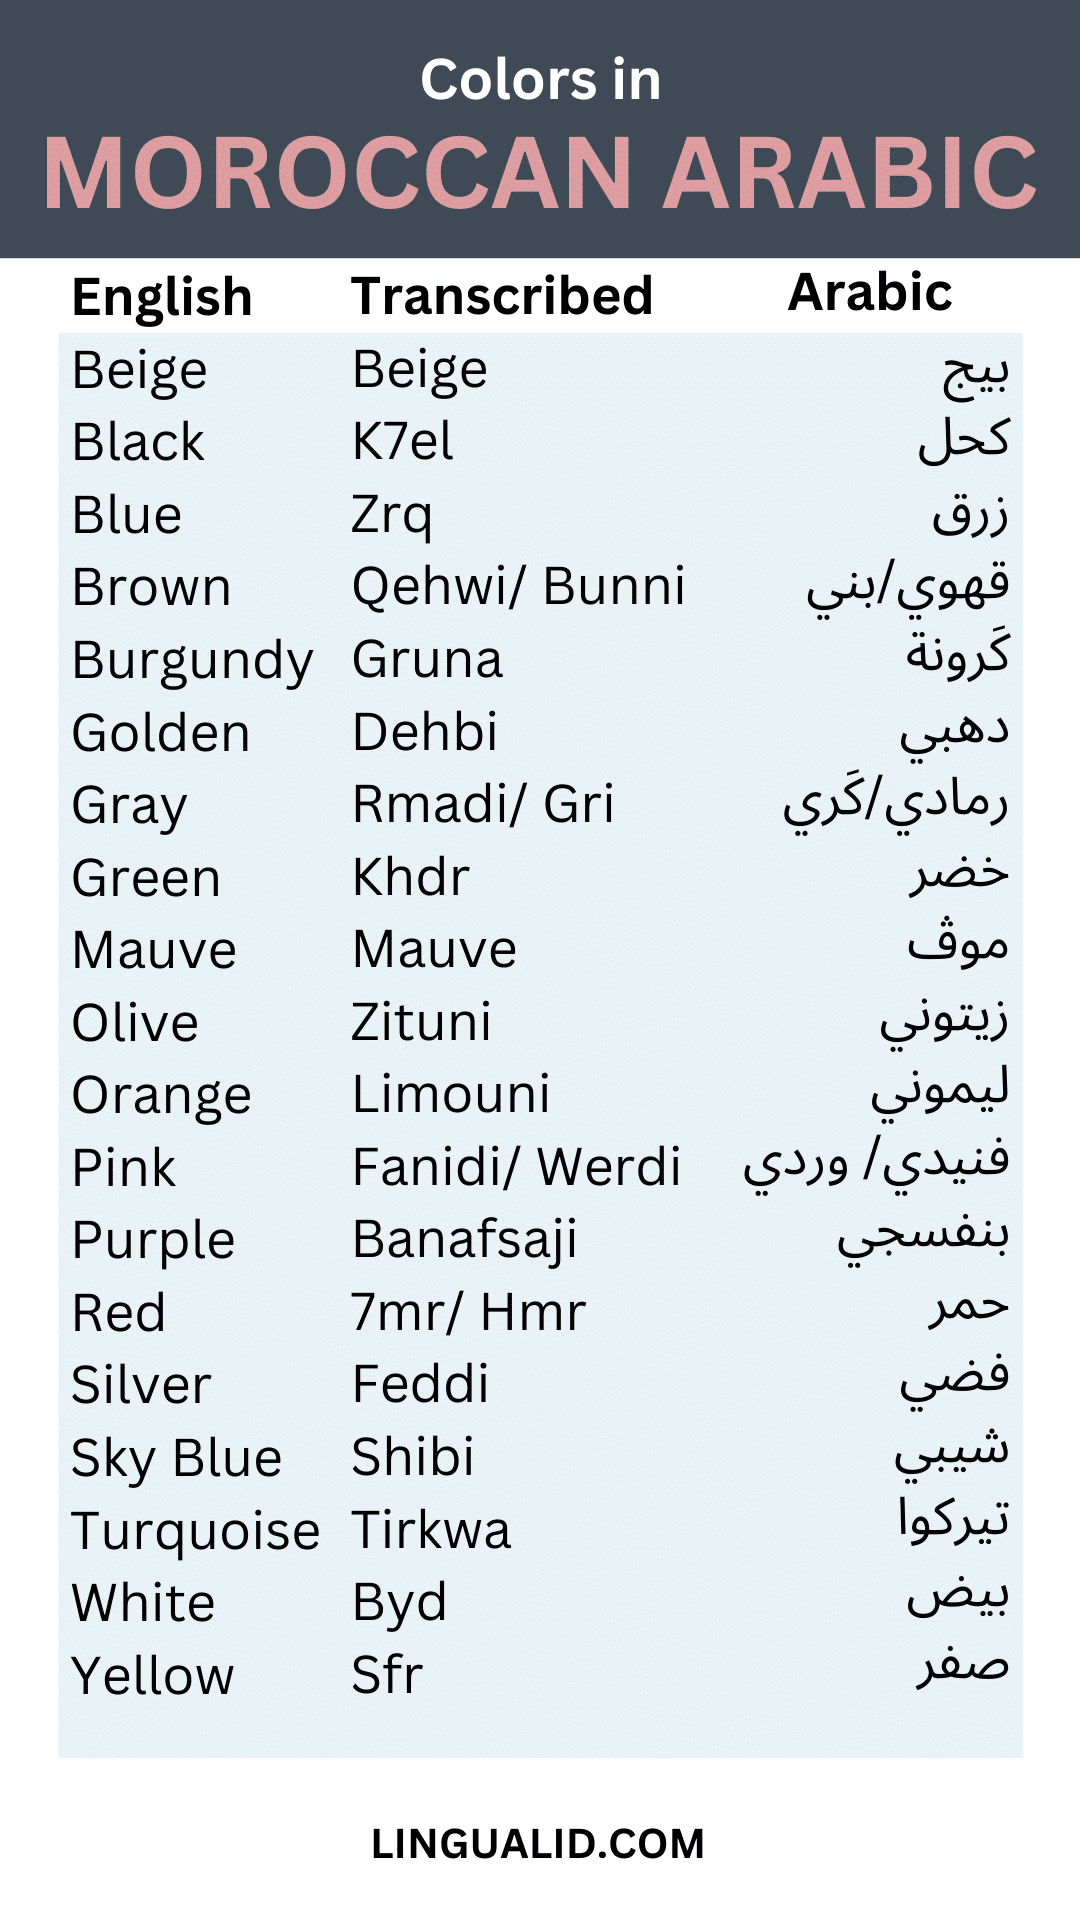 Colors in Moroccan Arabic visual